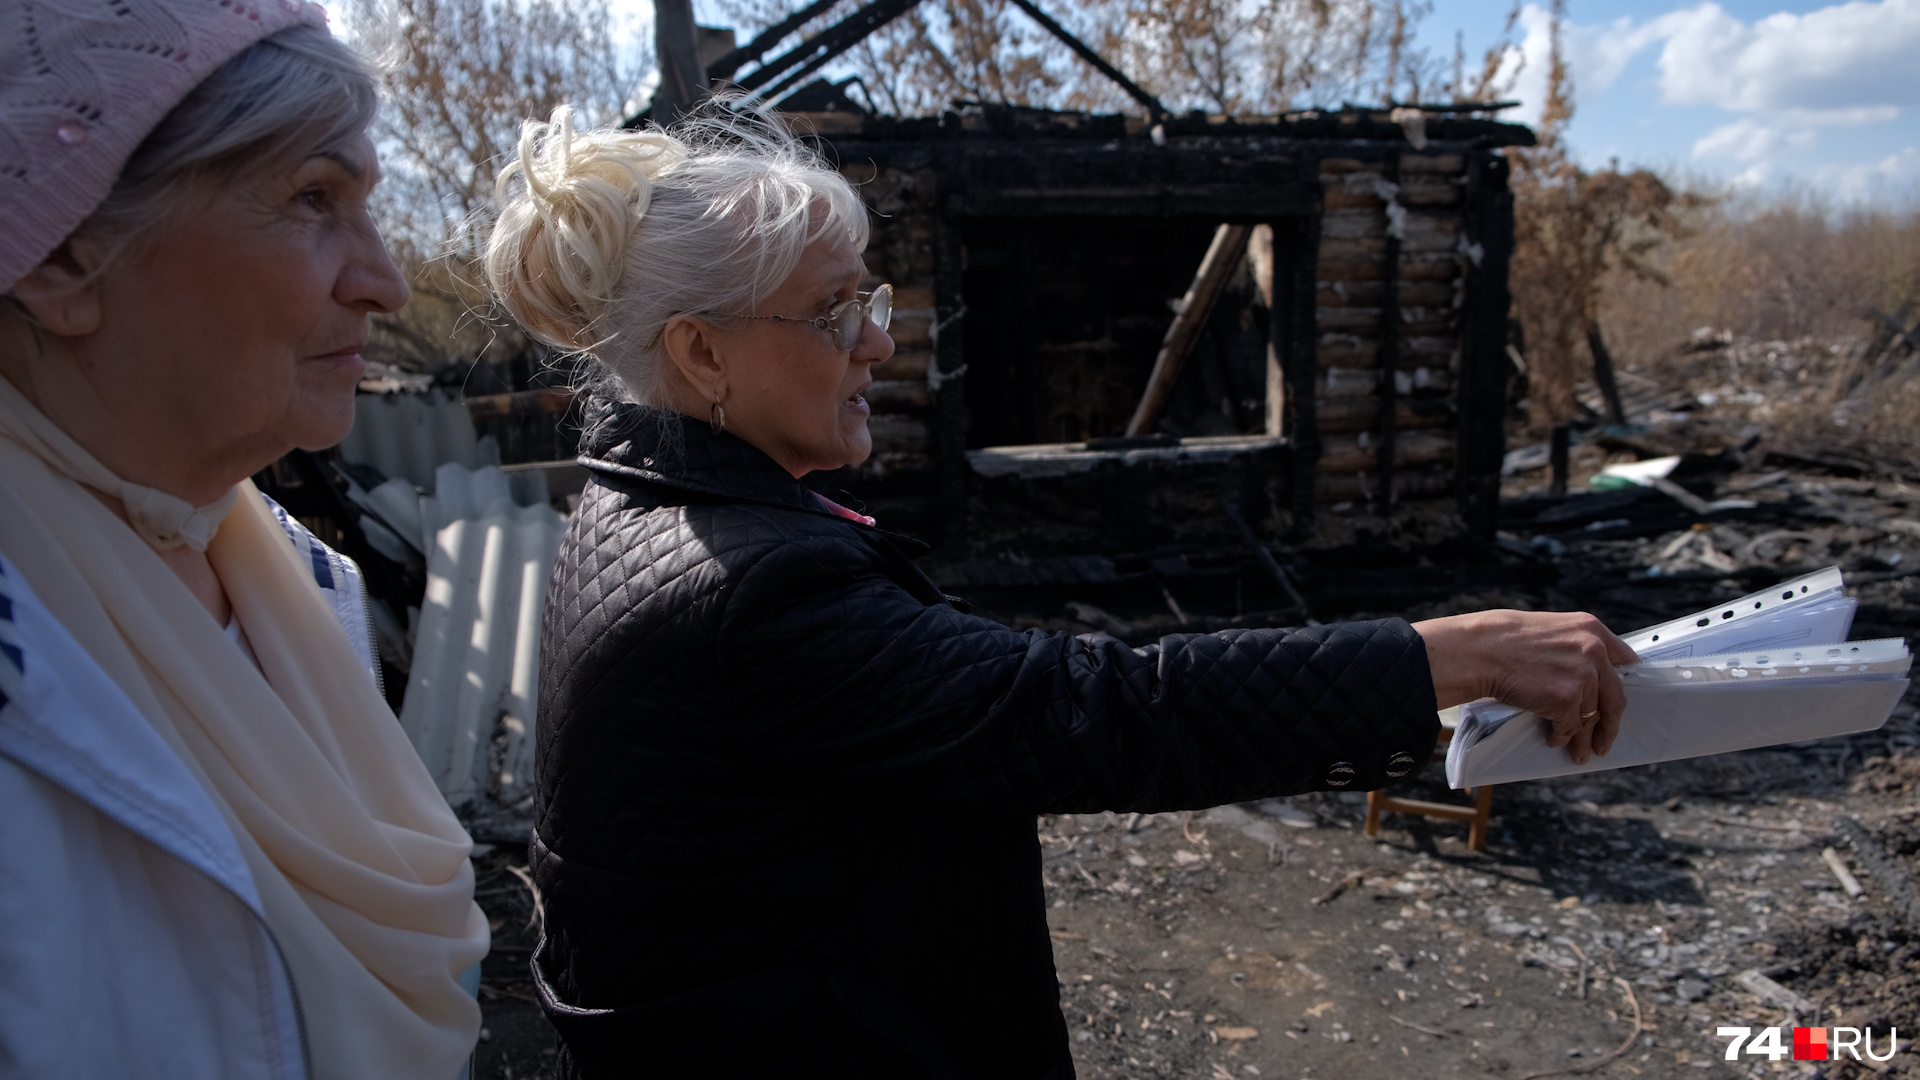 Прошлым летом в нескольких метрах от дома Натальи сгорела заброшенная постройка, огонь чудом не перекинулся на ее участок